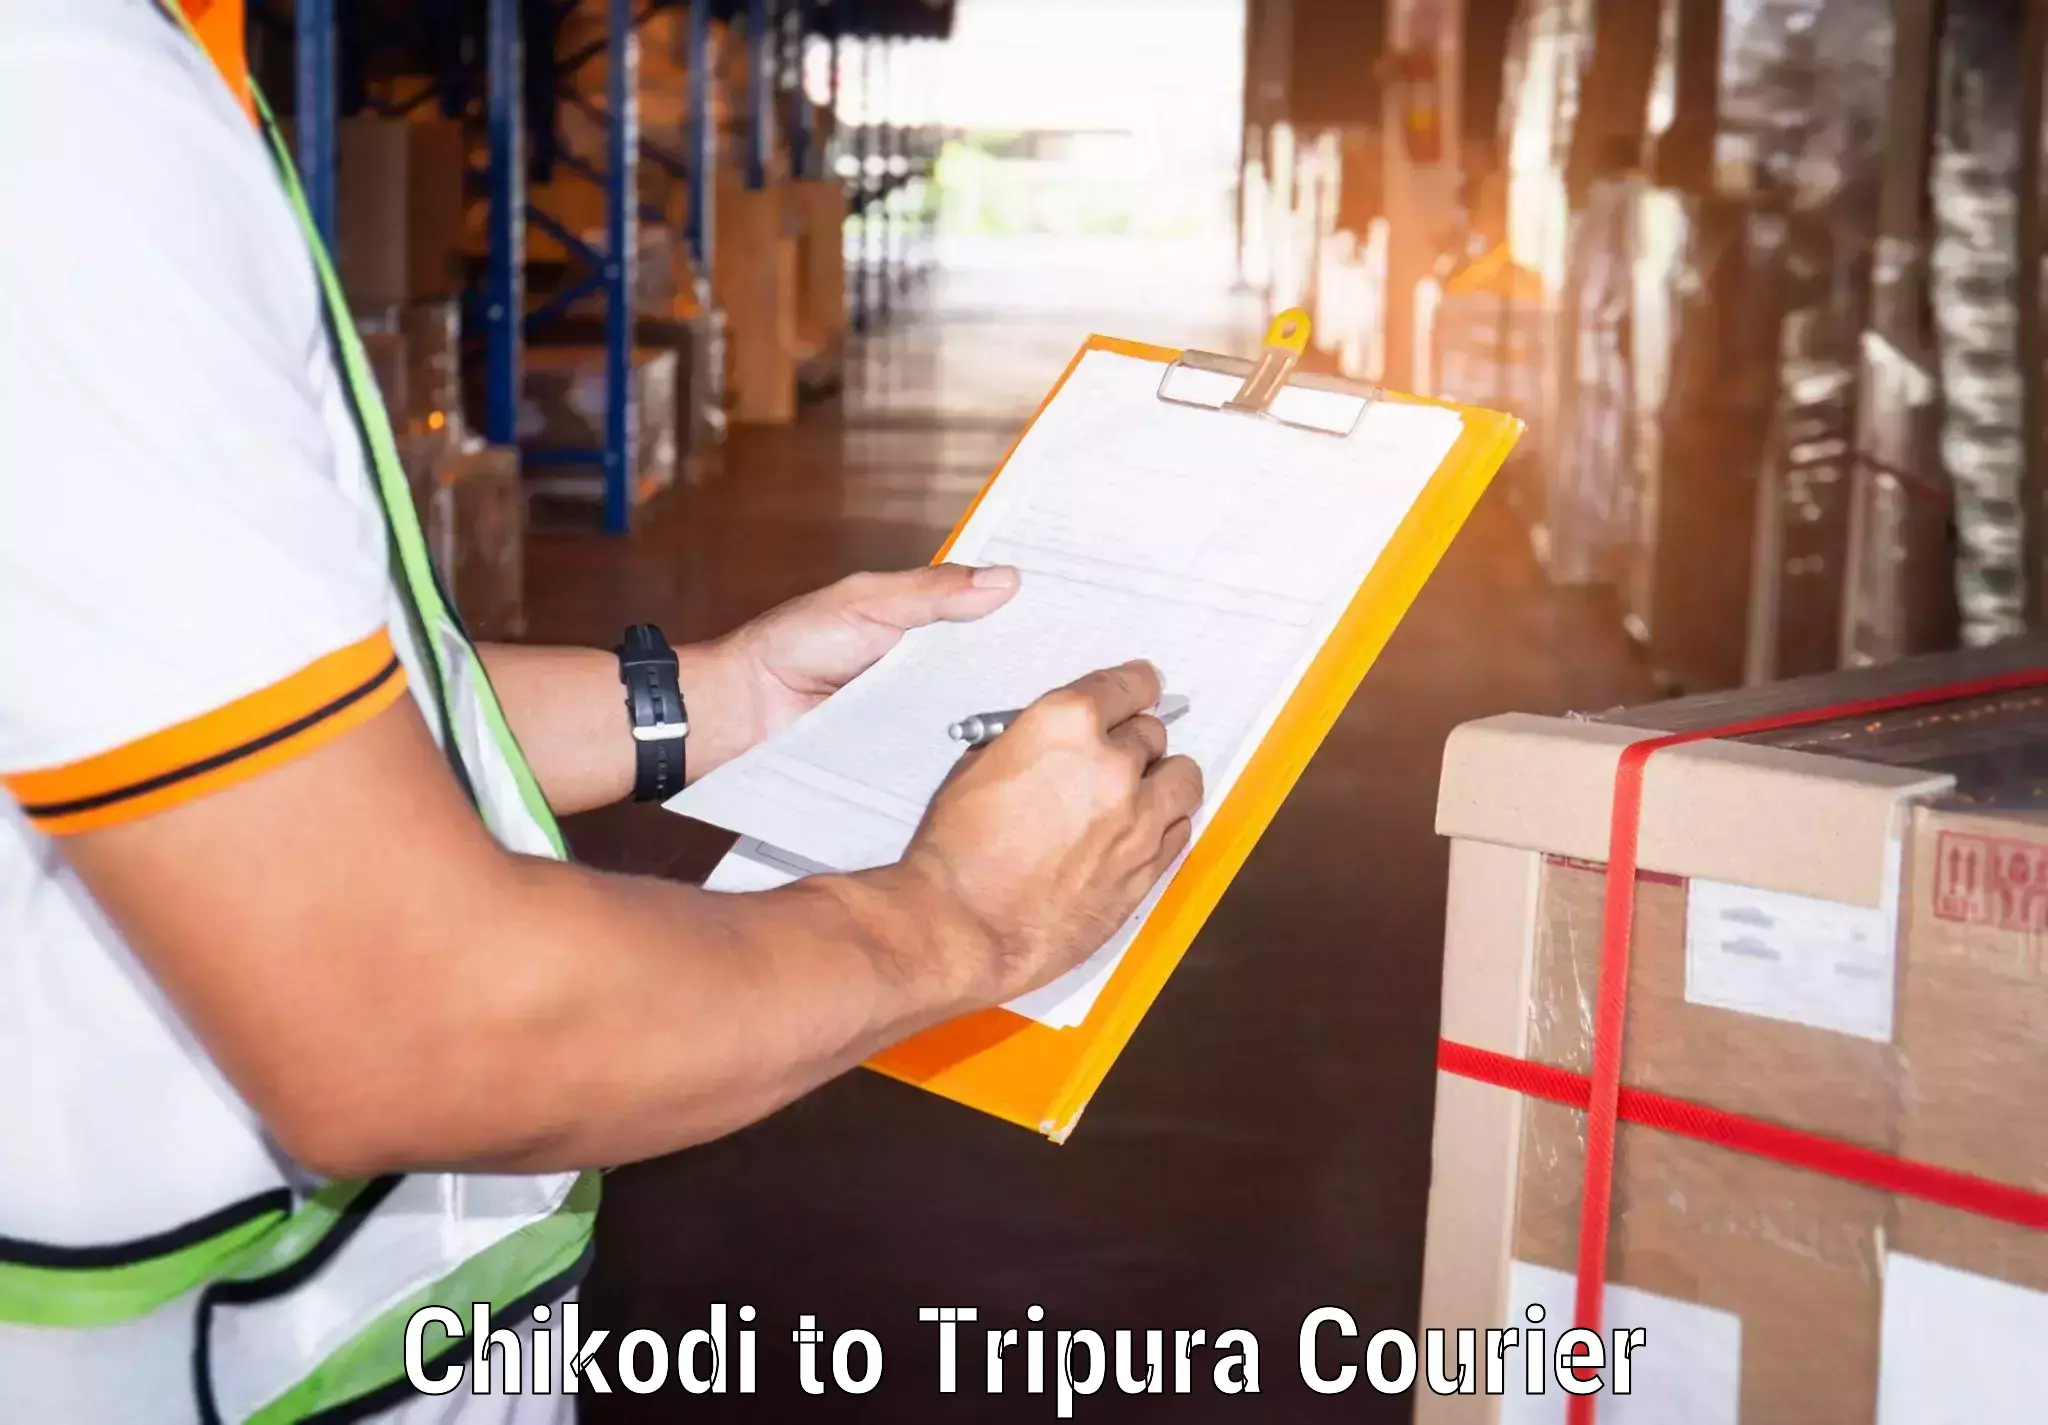 Fast delivery service Chikodi to North Tripura